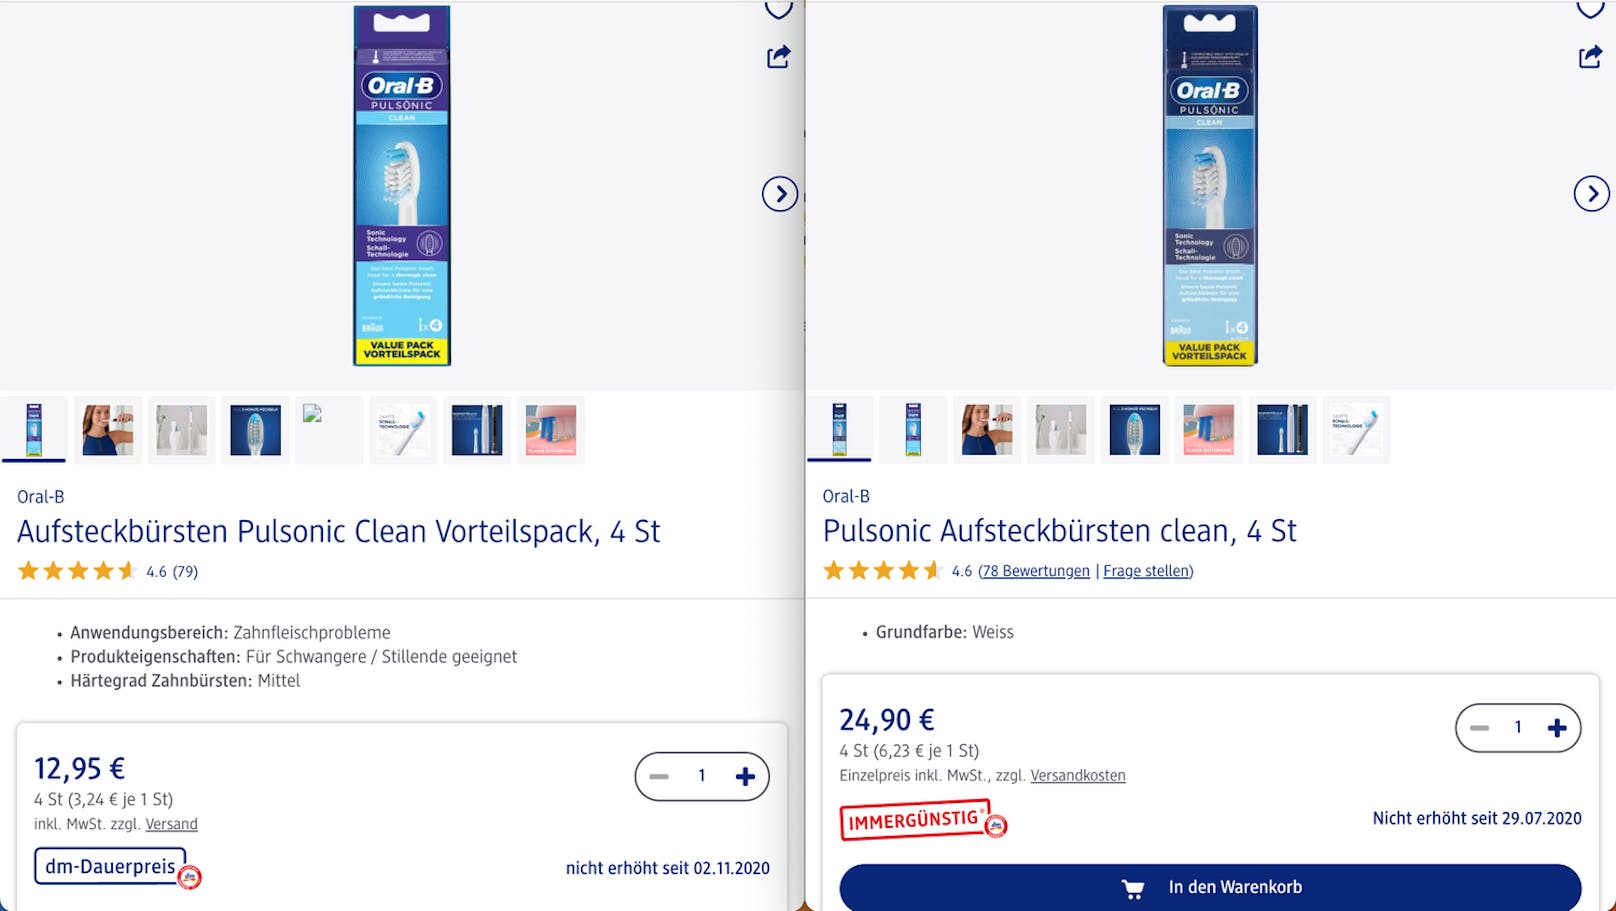 Viele Produkte sind in Österreich doppelt so teuer wie in Deutschland.